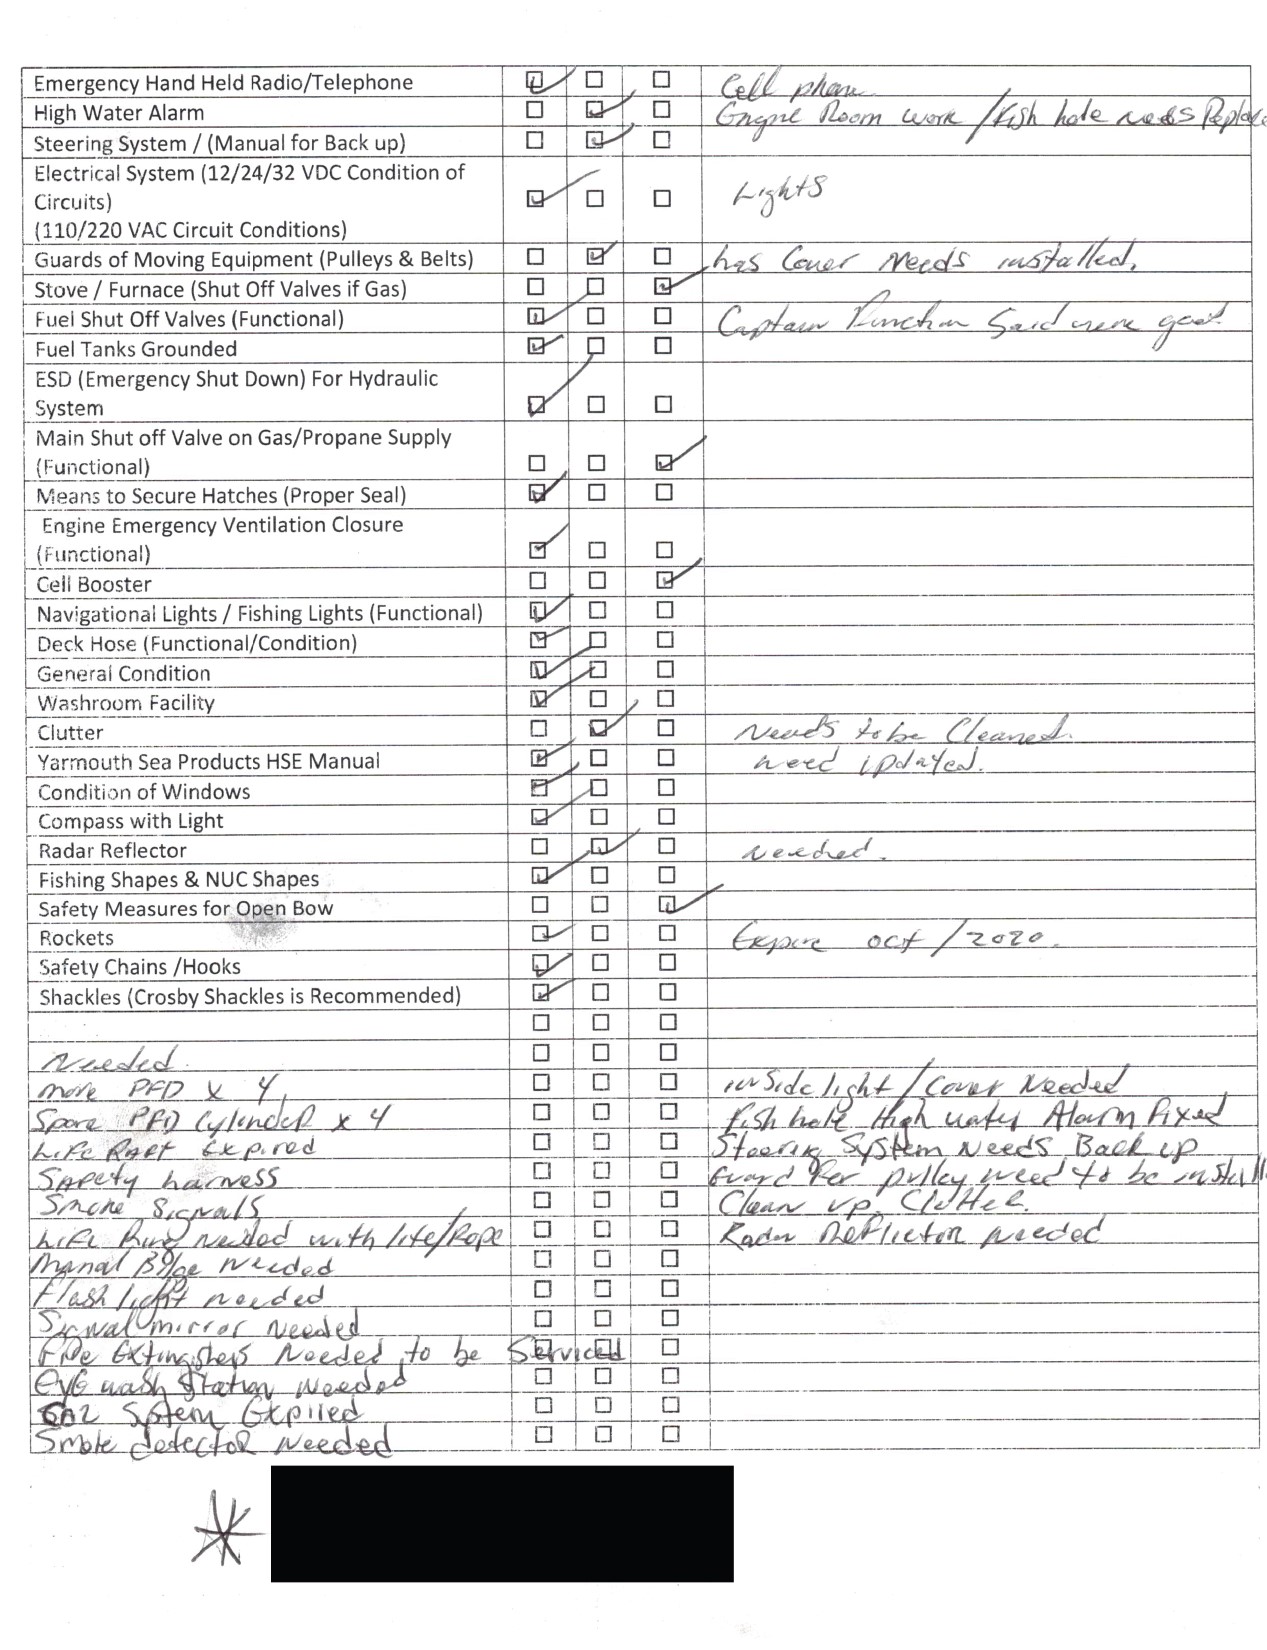 Deuxième page de la liste de contrôle d'inspection du navire pour le Chief William Saulis, remplie le 8 juin 2020 (Source: Yarmouth Sea Products Limited)